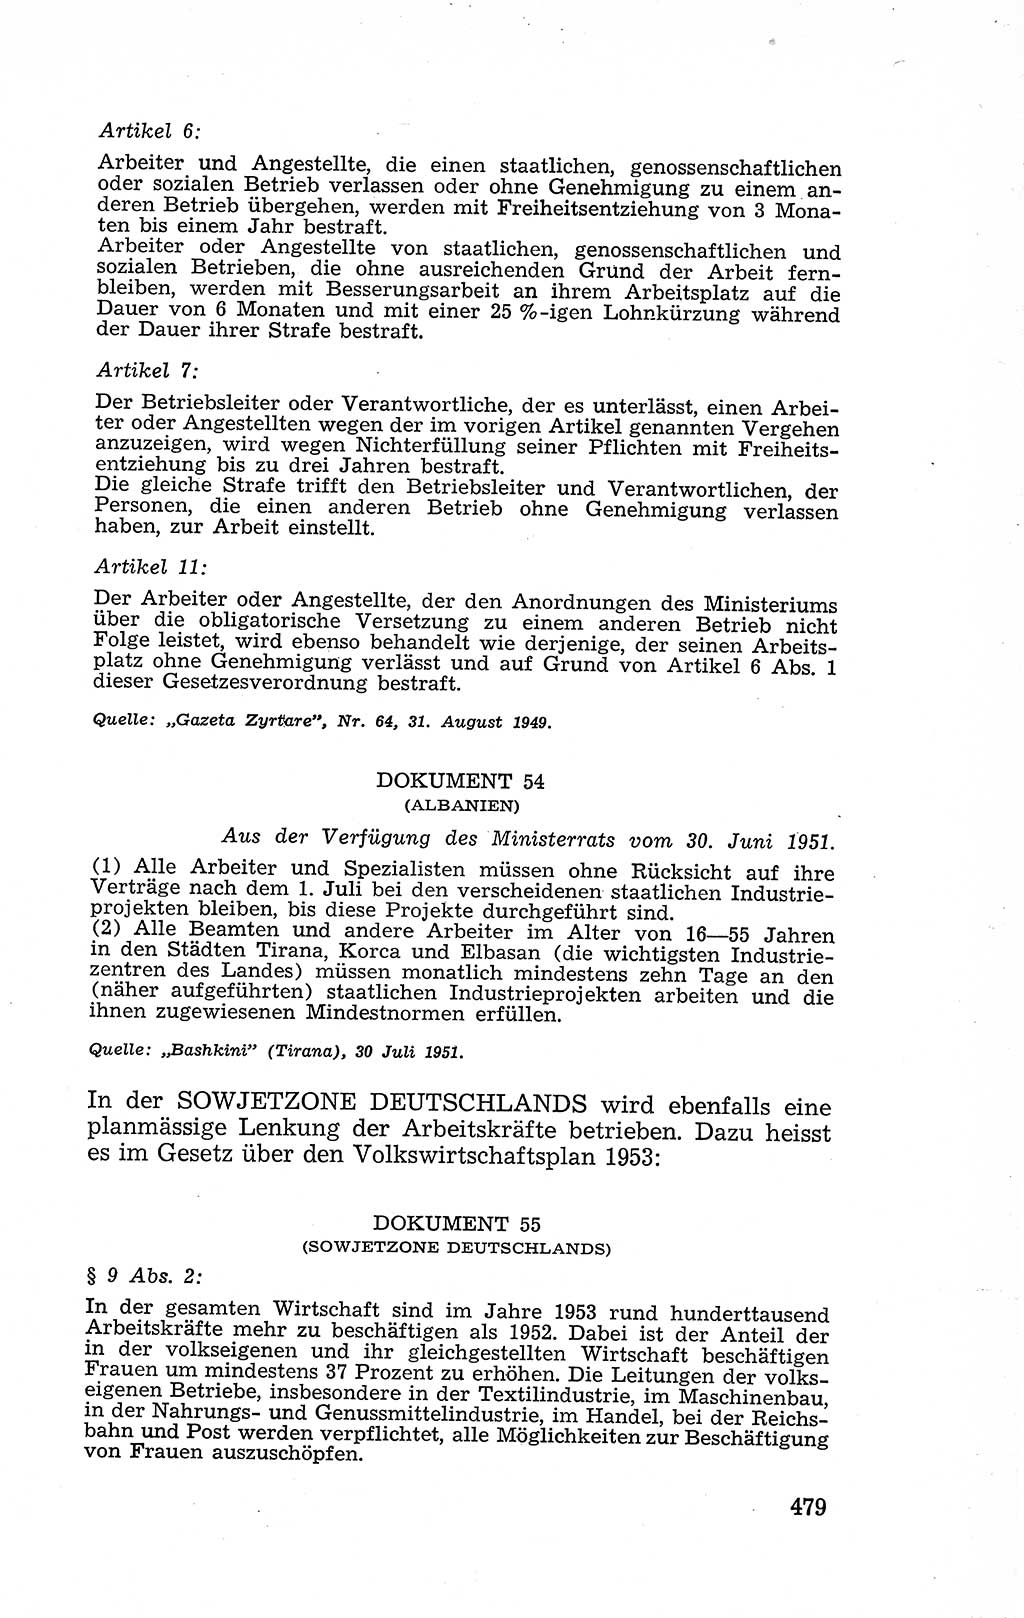 Recht in Fesseln, Dokumente, Internationale Juristen-Kommission [Bundesrepublik Deutschland (BRD)] 1955, Seite 479 (R. Dok. IJK BRD 1955, S. 479)